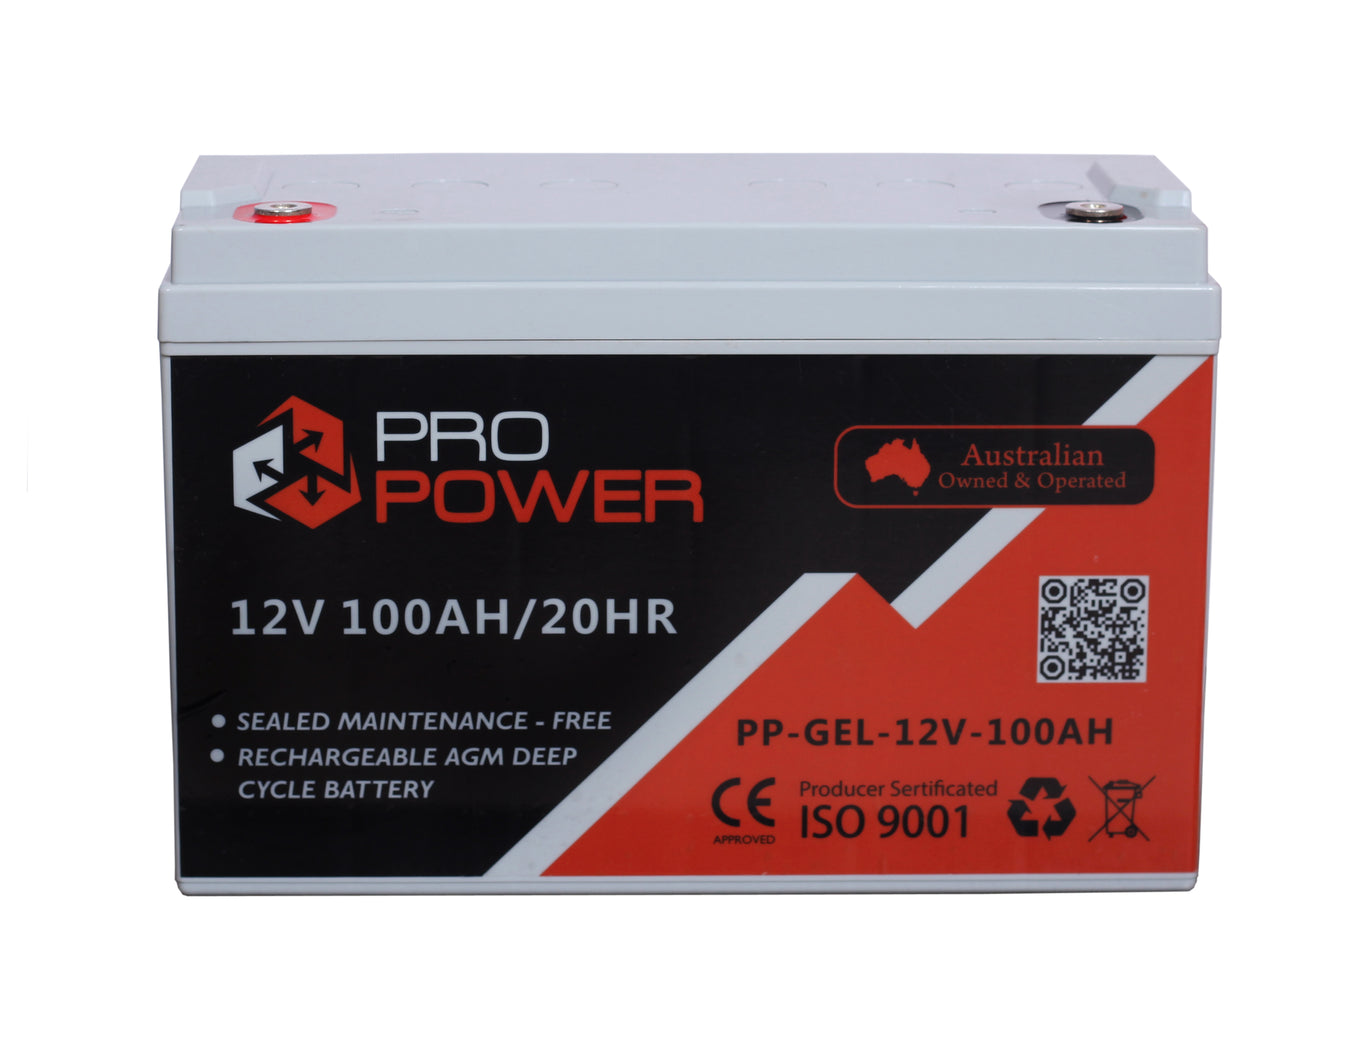 Pro power - battery - GEL